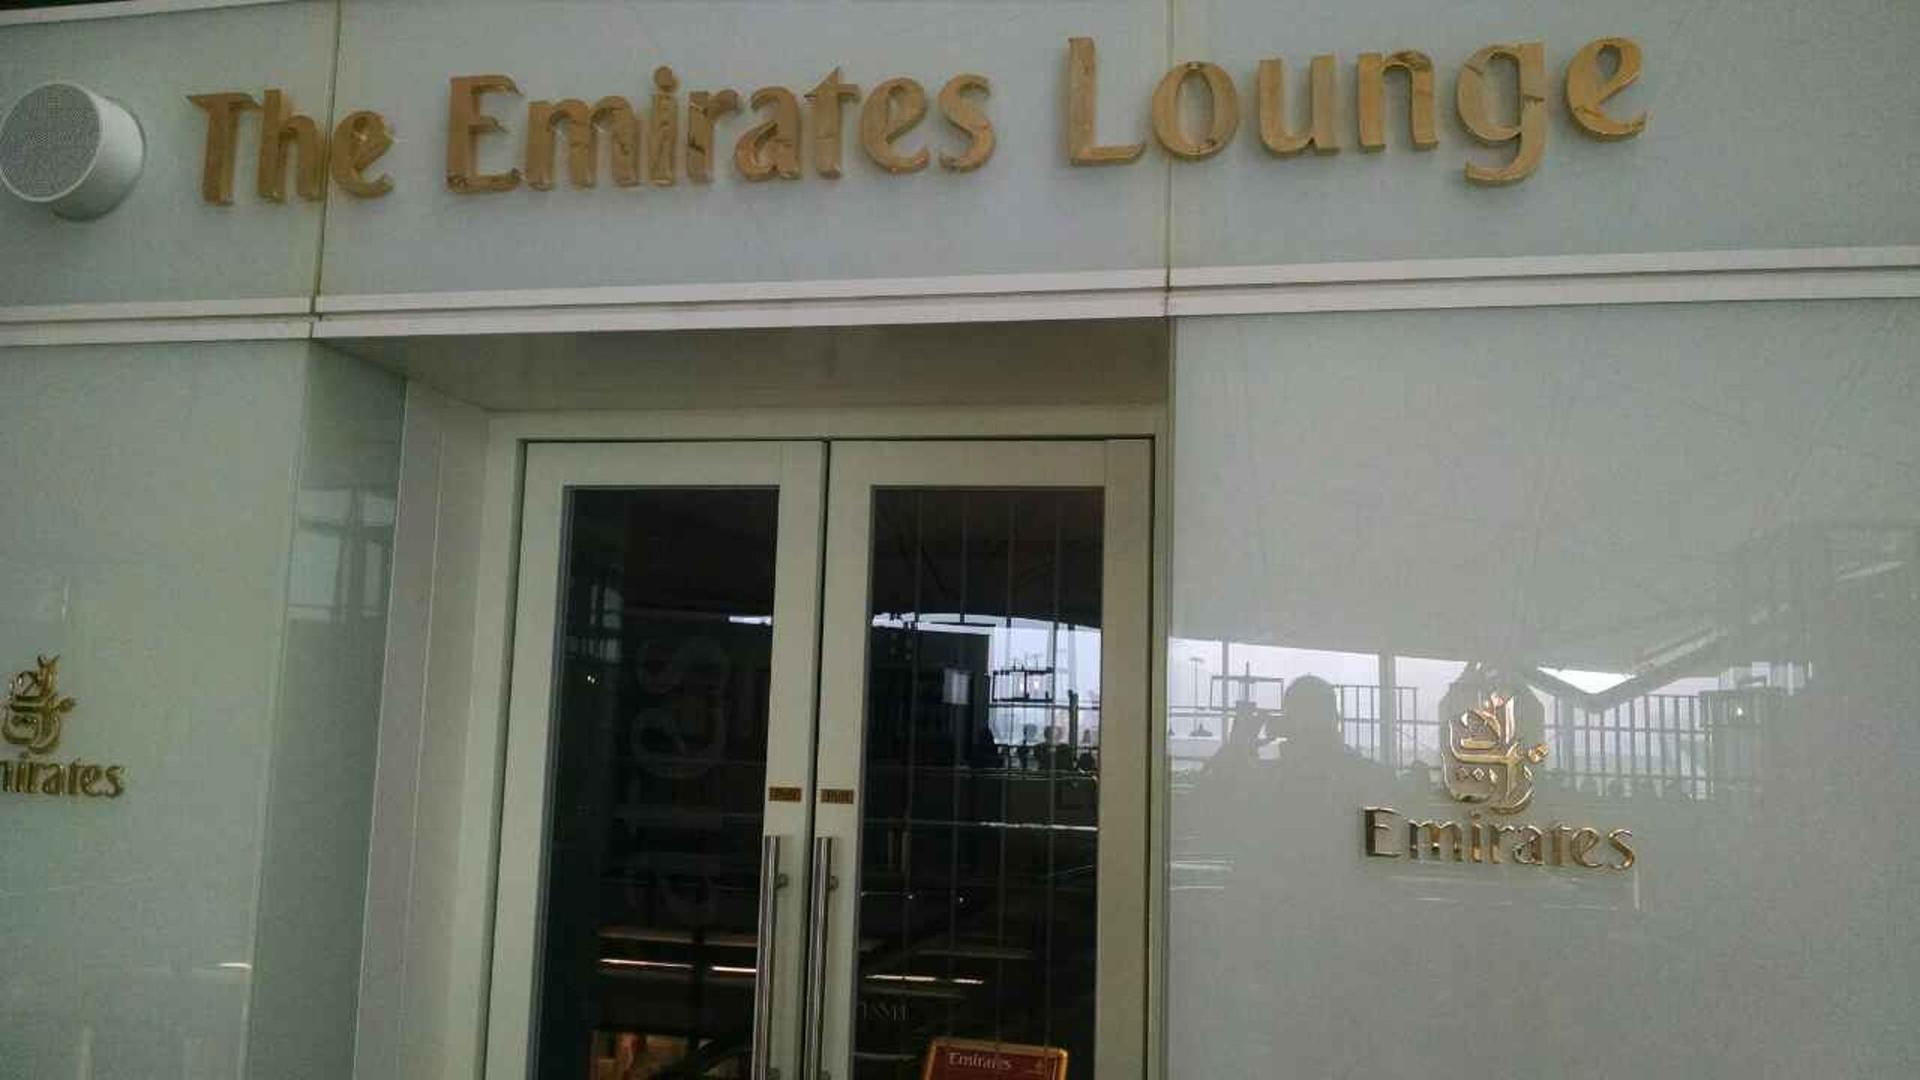 The Emirates Lounge  image 1 of 6